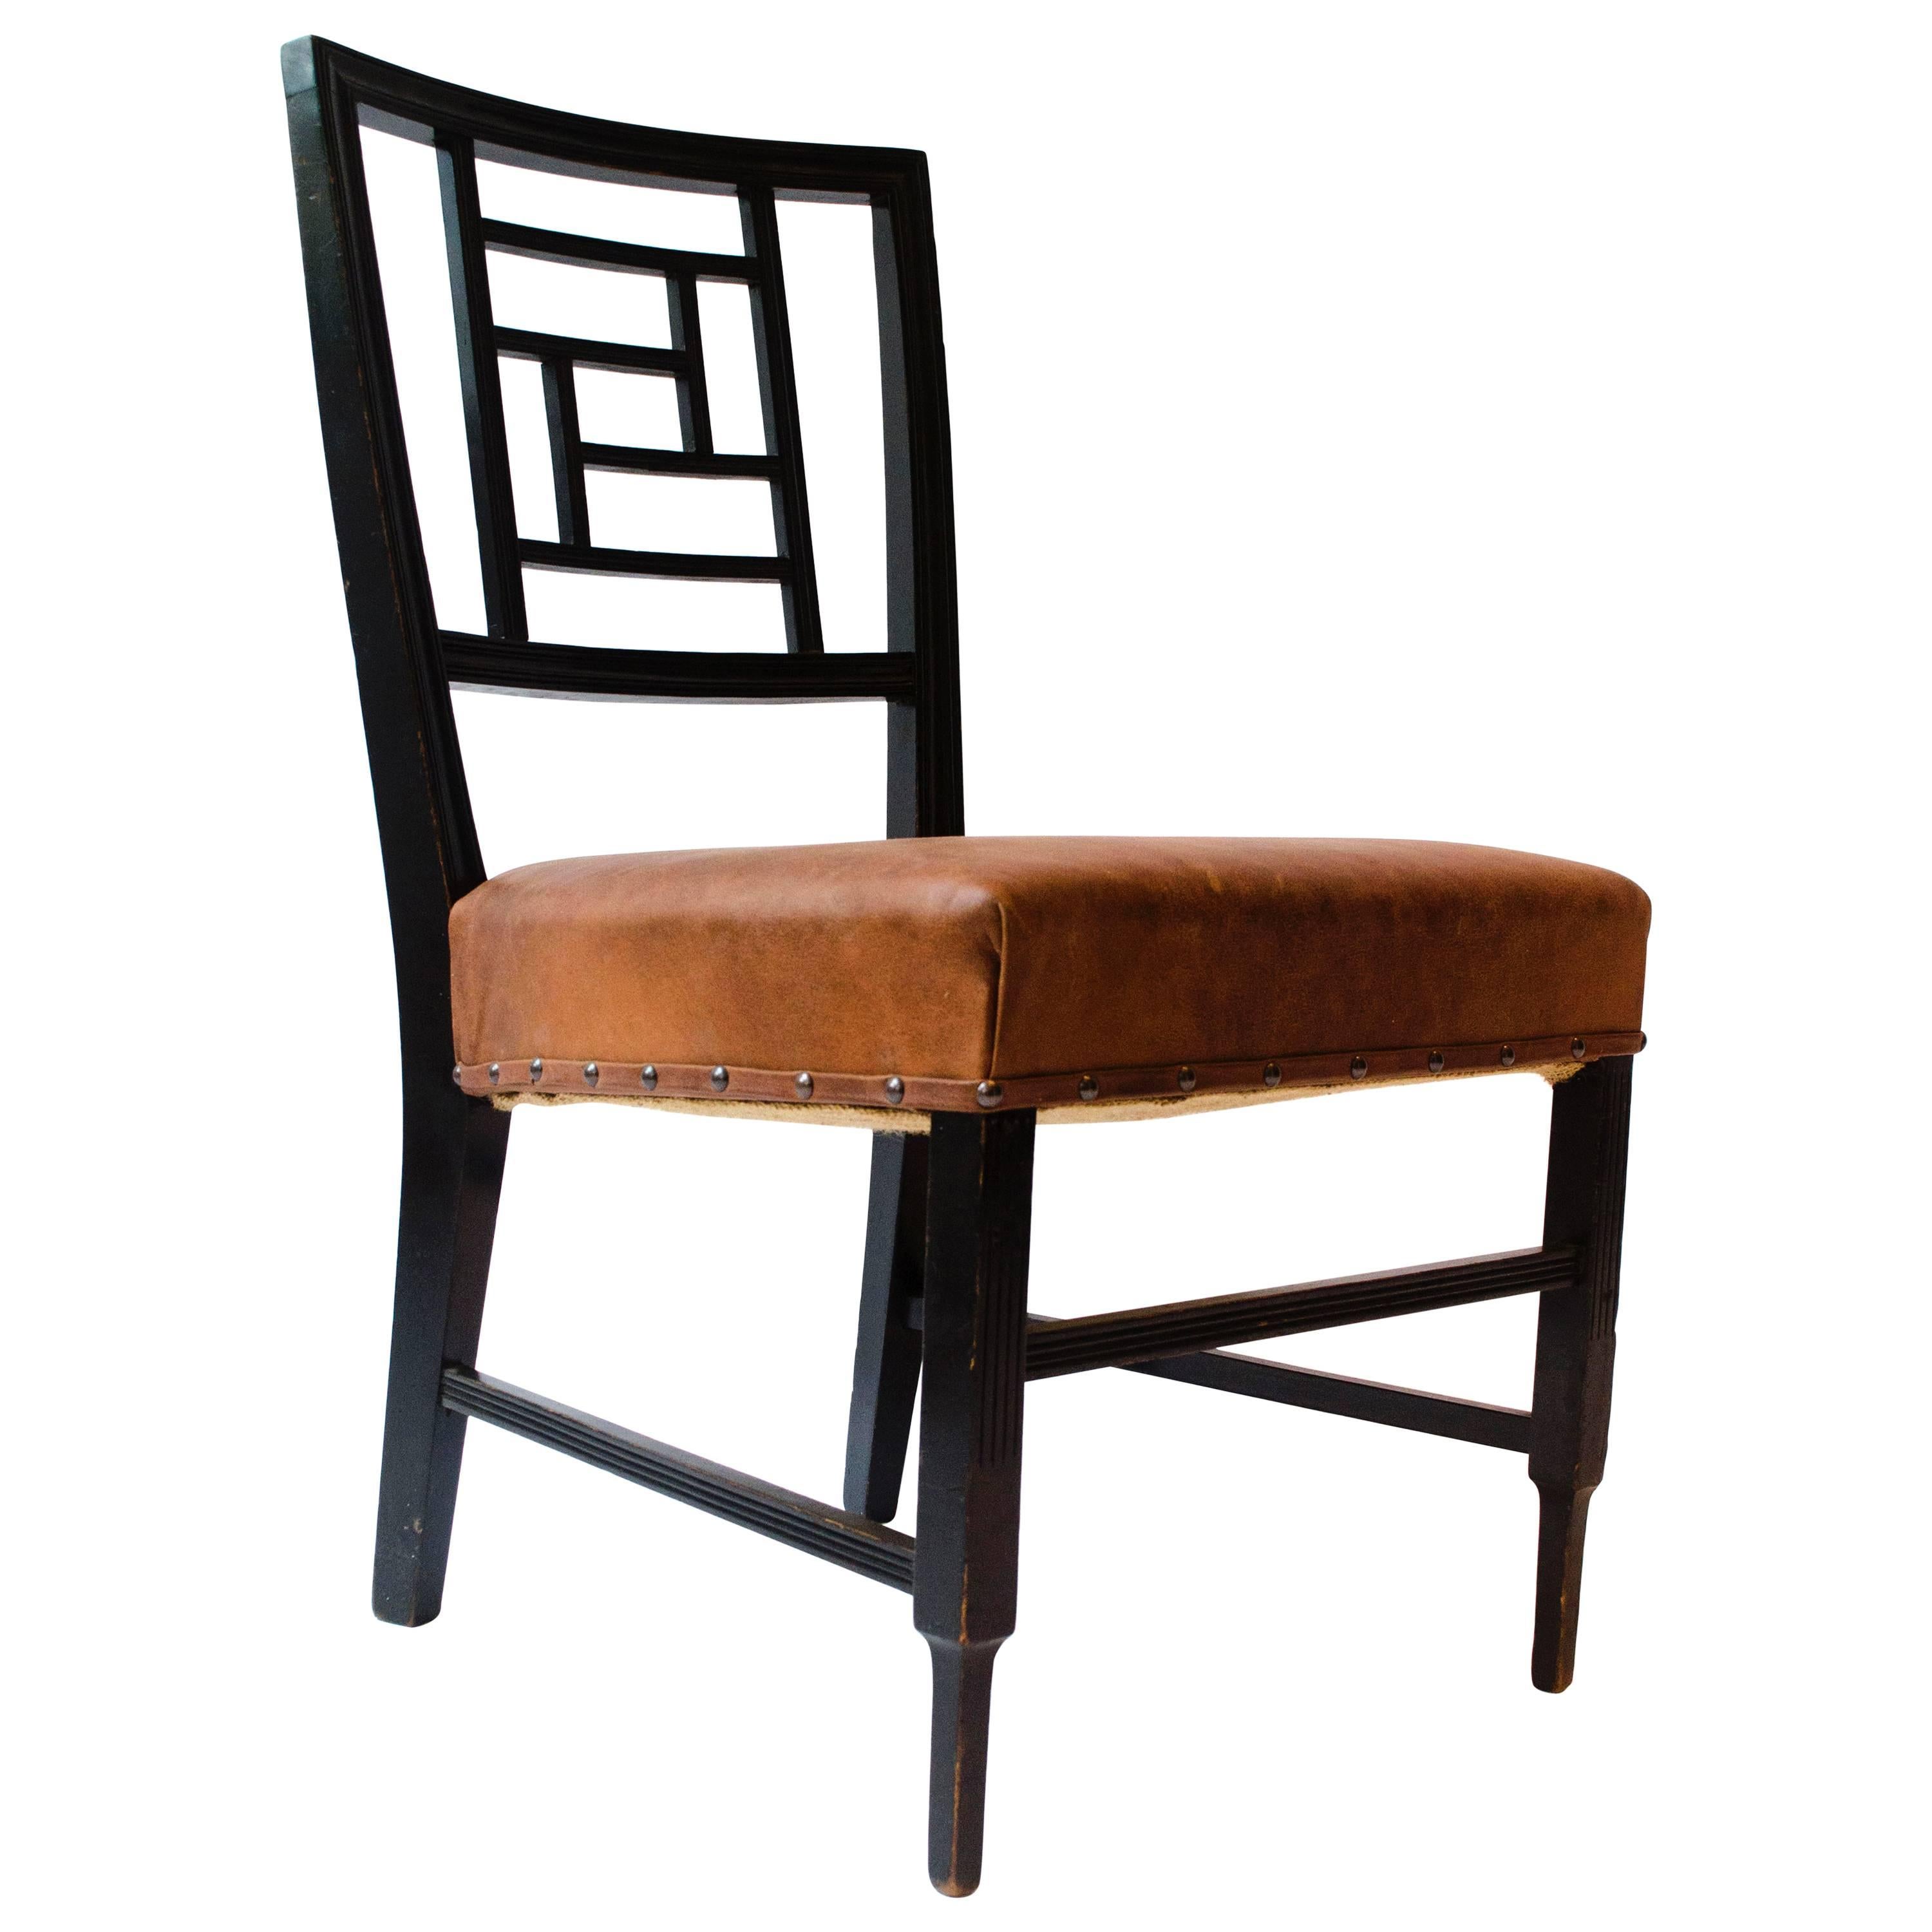 E W Godwin. Anglo-japanischer ebonisierter Beistellstuhl, wahrscheinlich von William Watt gefertigt